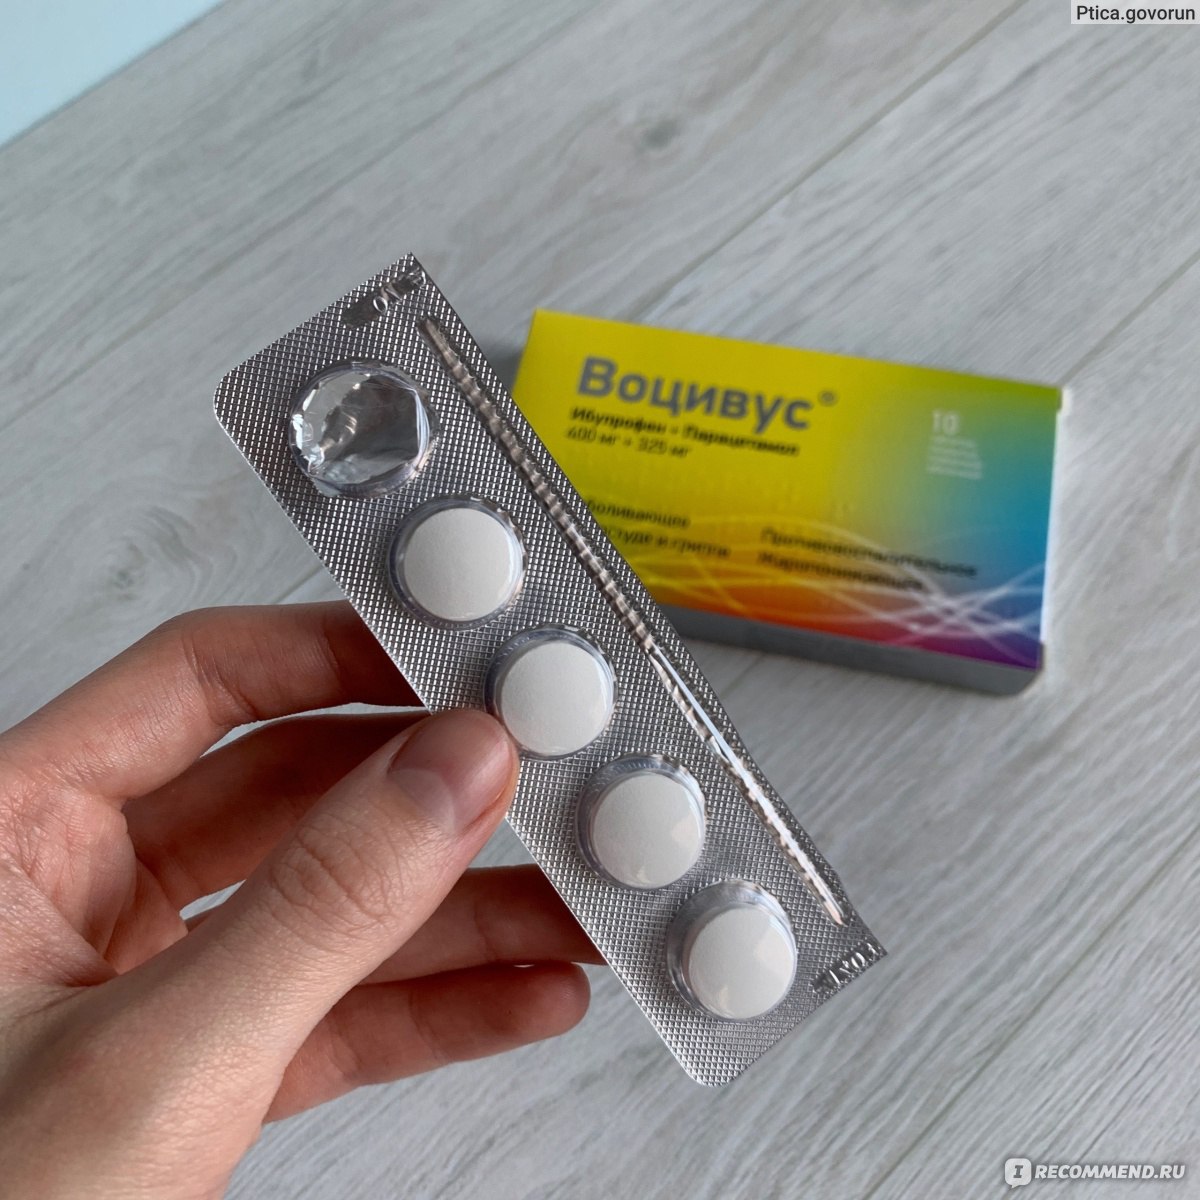 Лекарственный препарат Медисорб АО Воцивус - «Та самая таблетка 